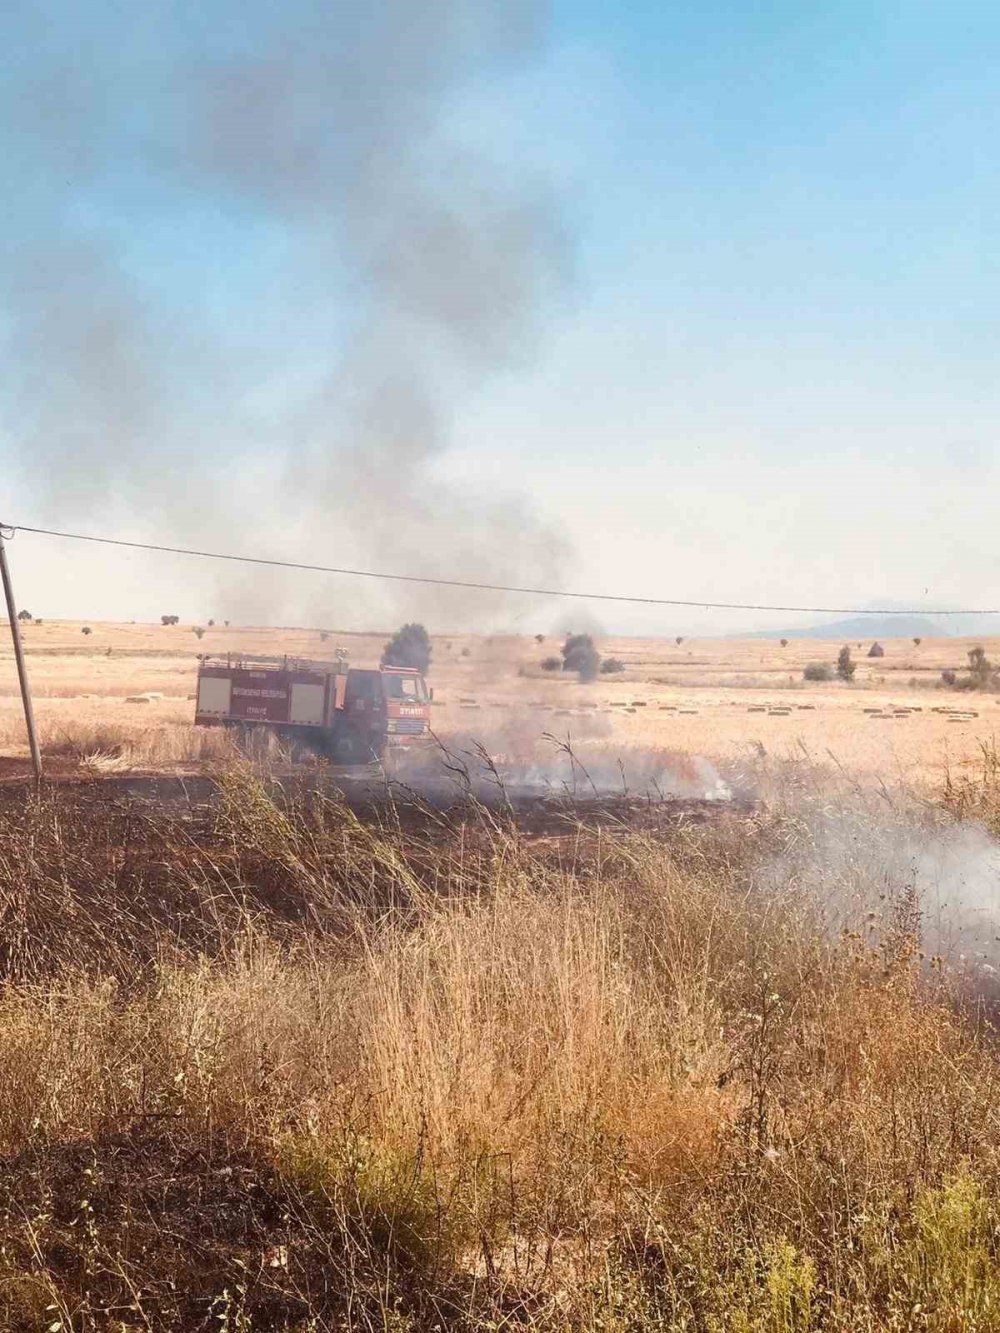 Konya'da minibüsteki yangın araziye sıçradı